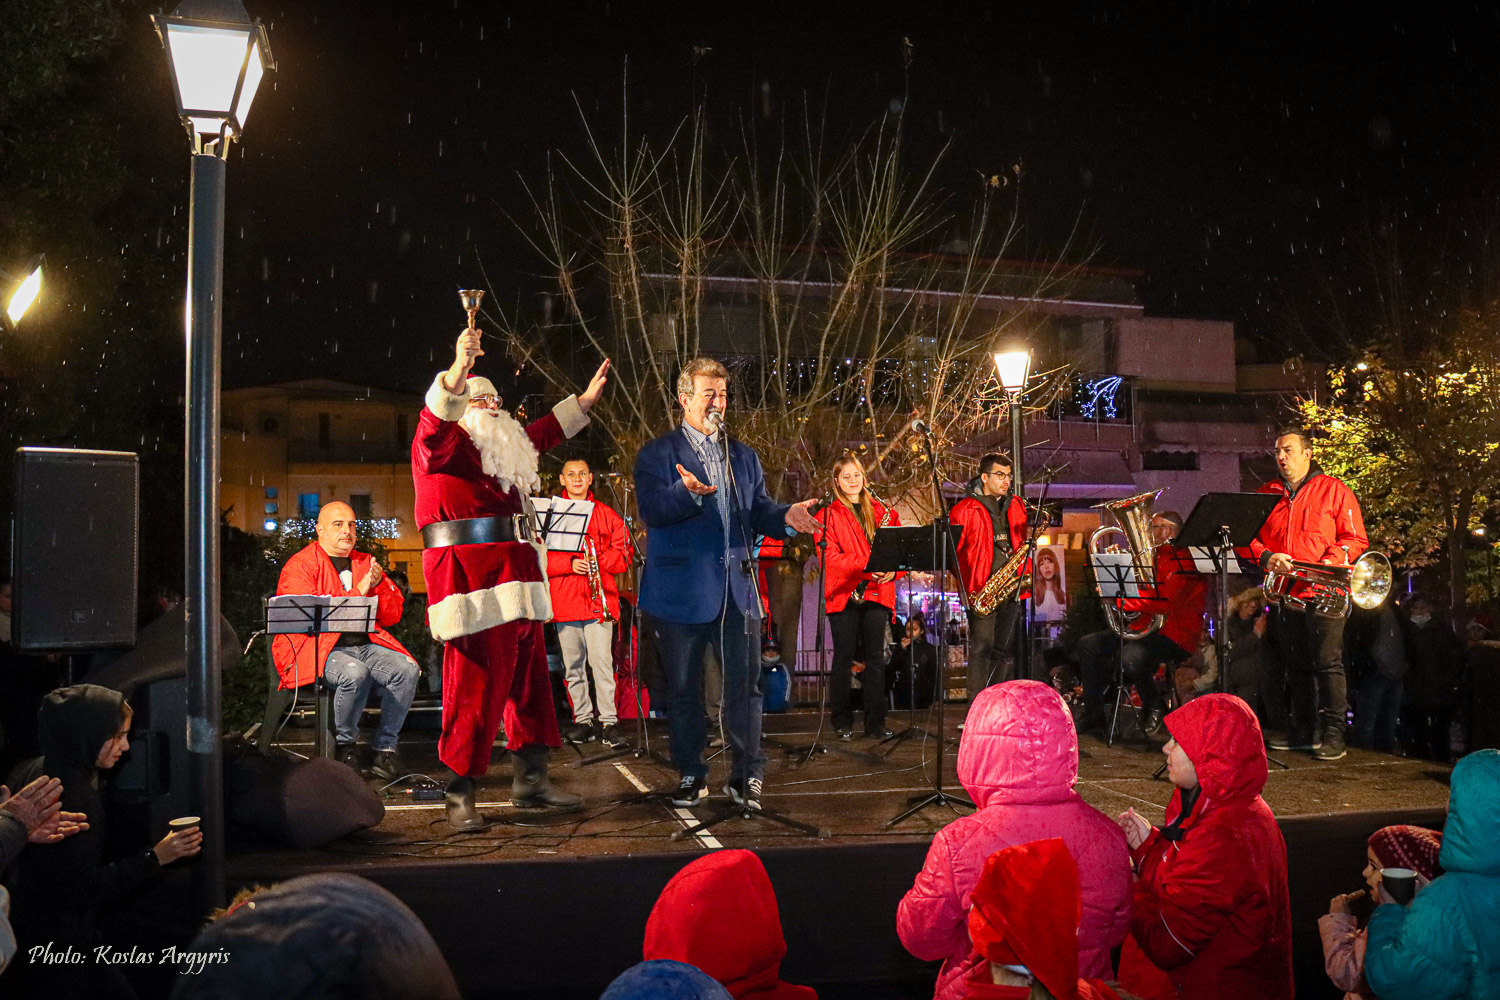 Με το άναμμα του χριστουγεννιάτικου δέντρου συνεχίστηκαν οι εκδηλώσεις του δήμου Νεάπολης-Συκεών